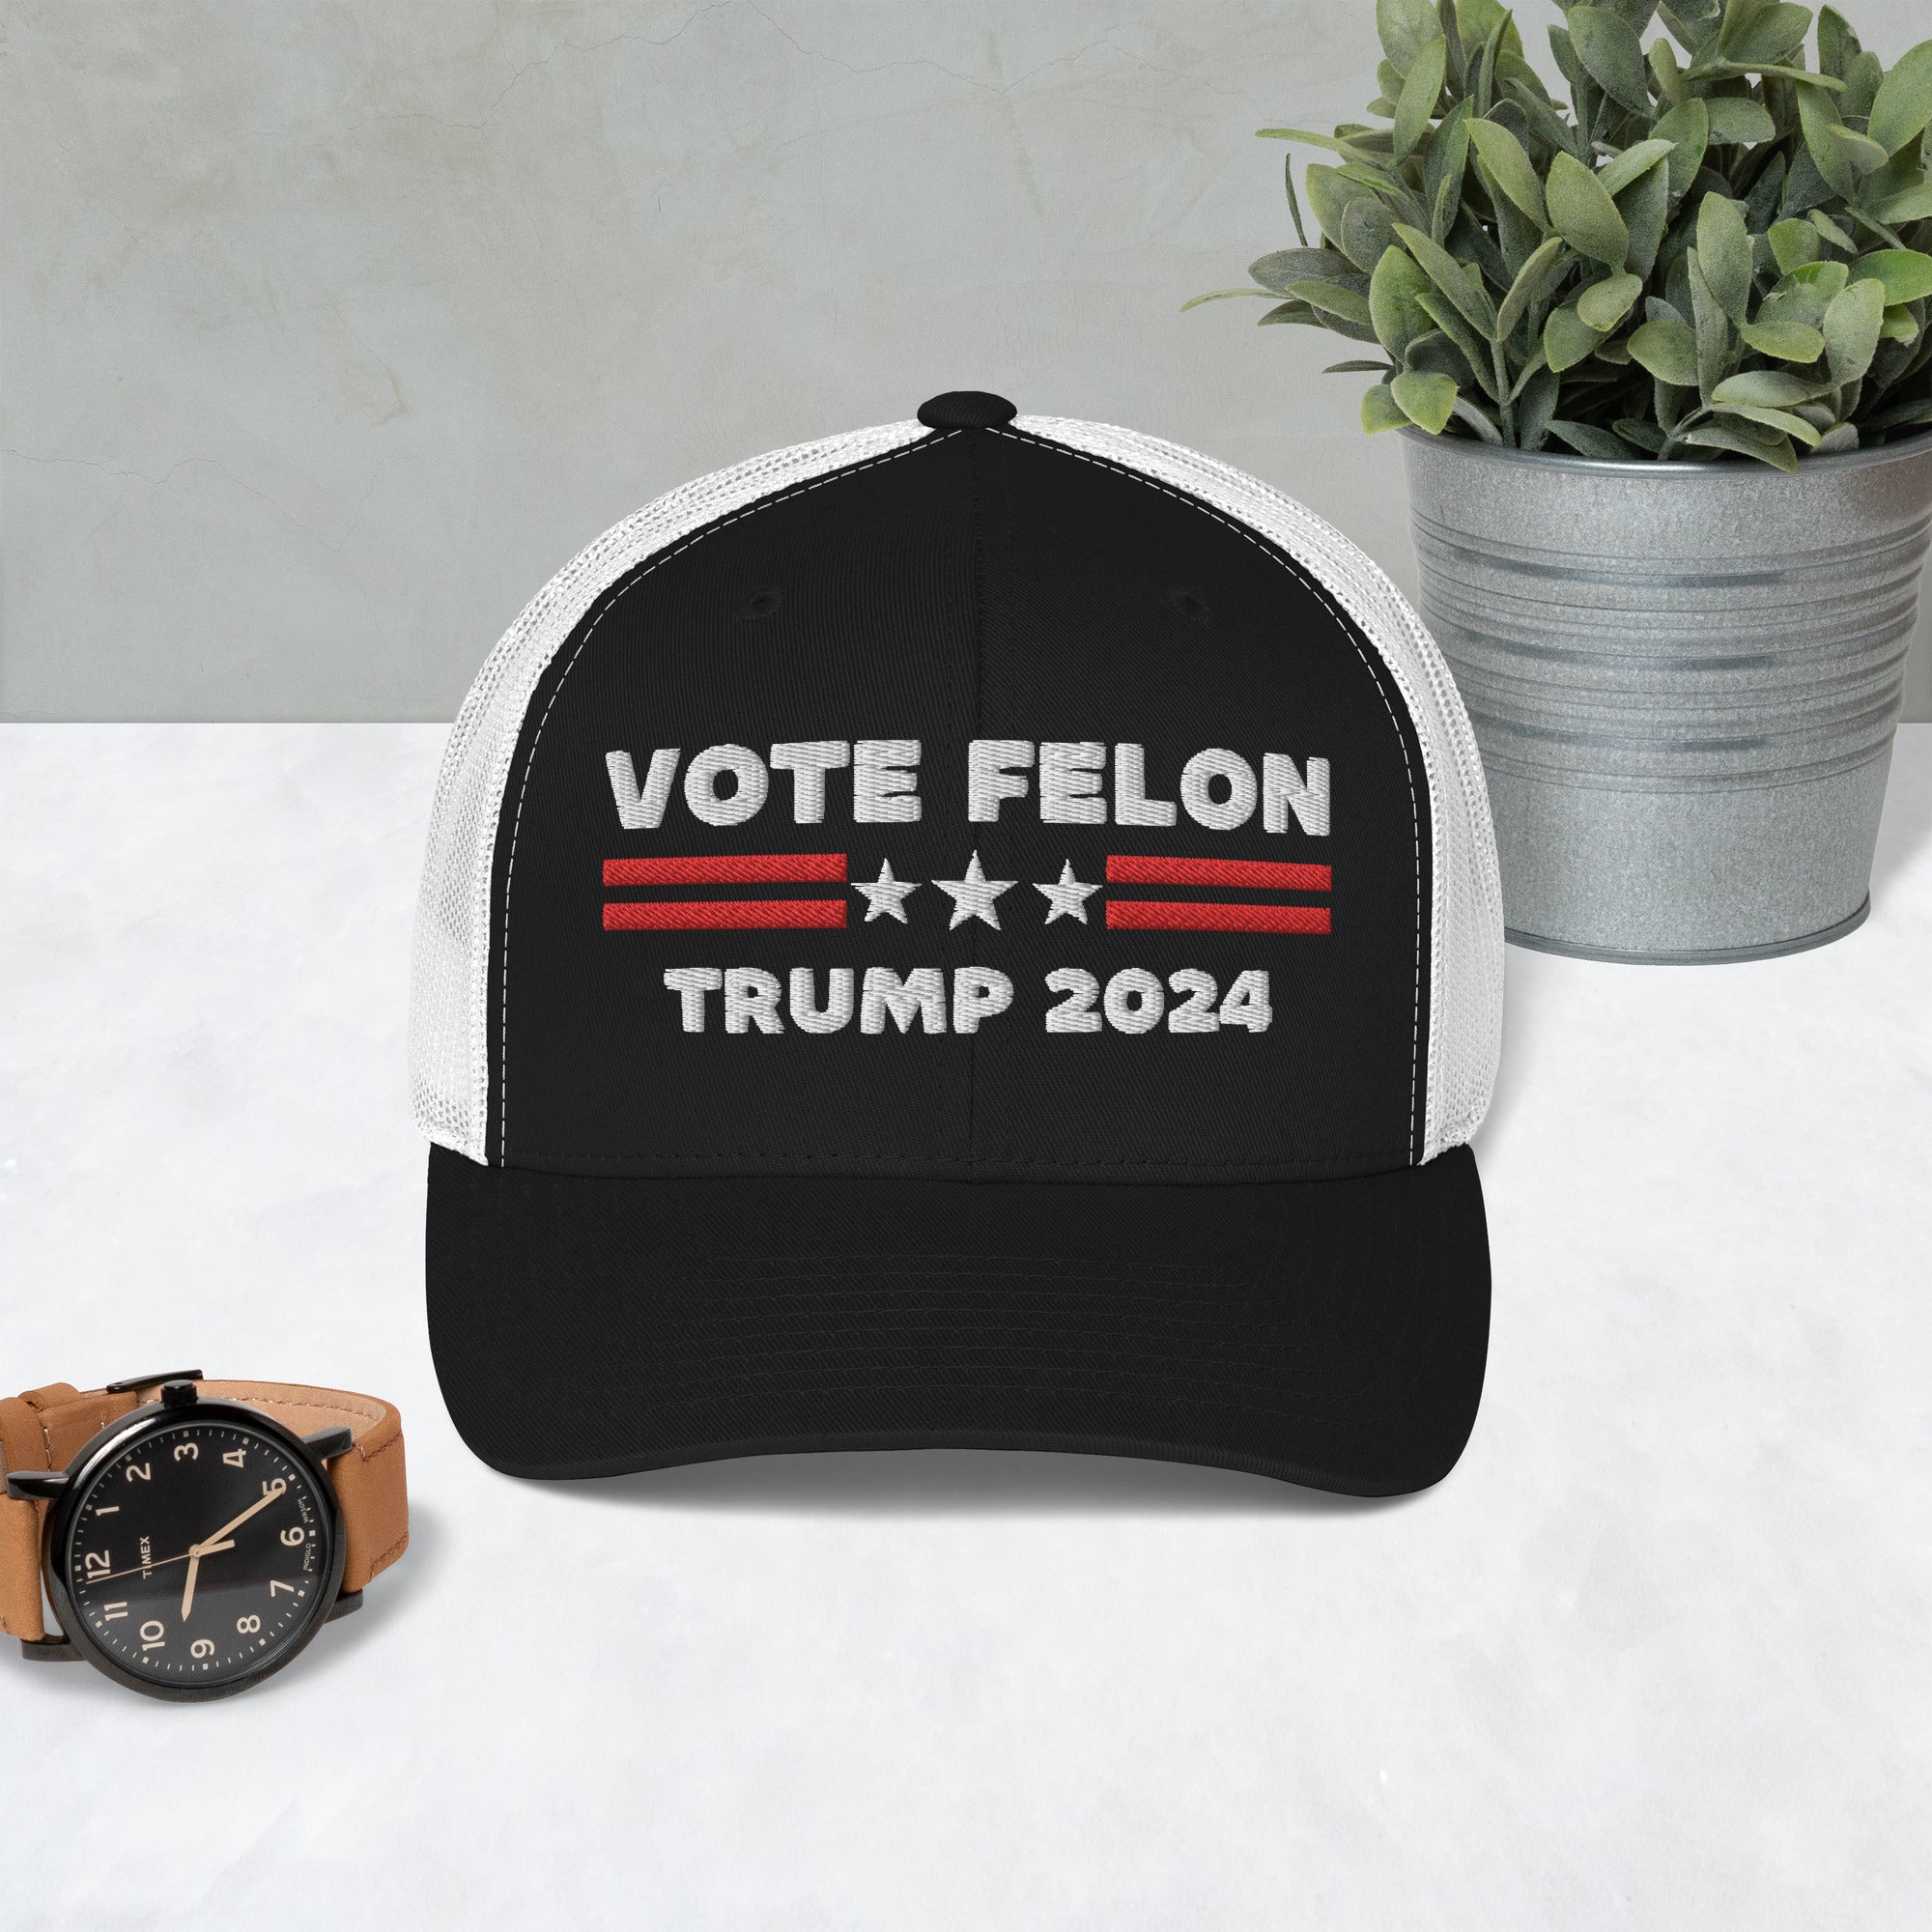 Vote Felon 2024, Presidente condenado, Sombrero Trump 2024, Regalo republicano, Sombreros electorales, Gorra republicana, Sombreros políticos, Sombrero de papá divertido